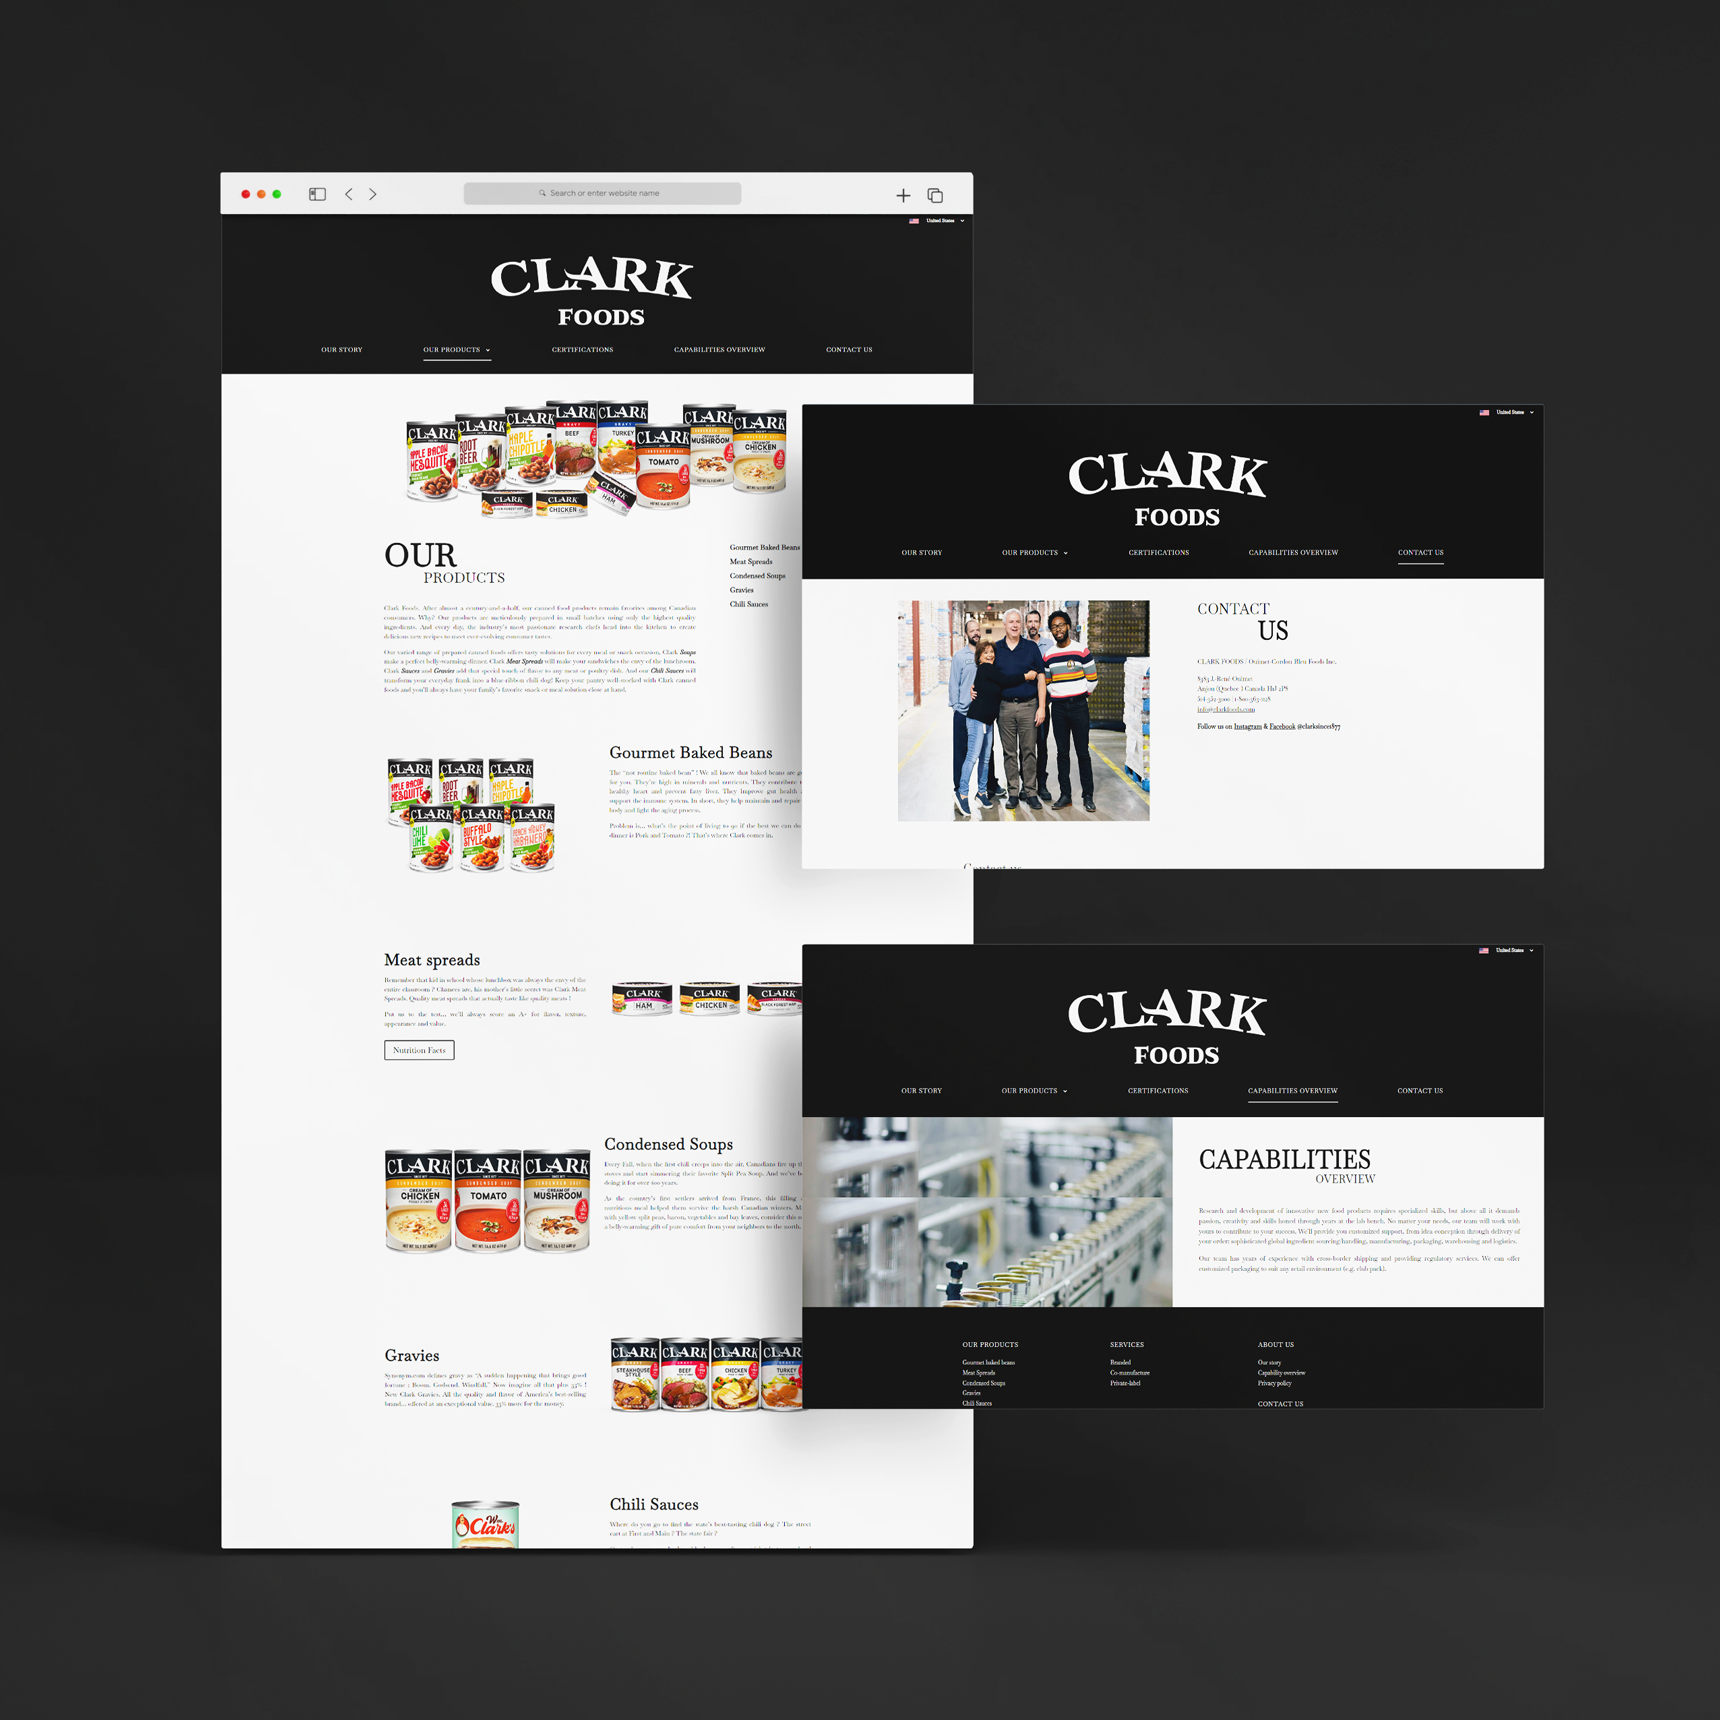 CLARK-FOODS-maquette-site-web-page-sec